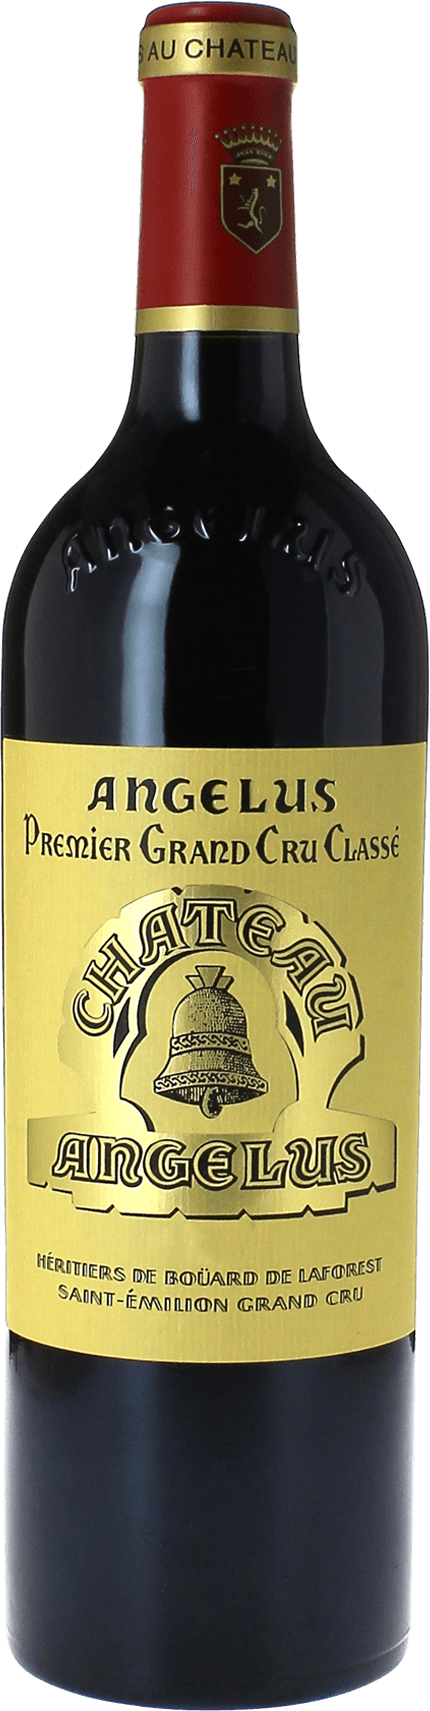 Angelus 1989 1er Grand cru B class Saint-Emilion, Bordeaux rouge